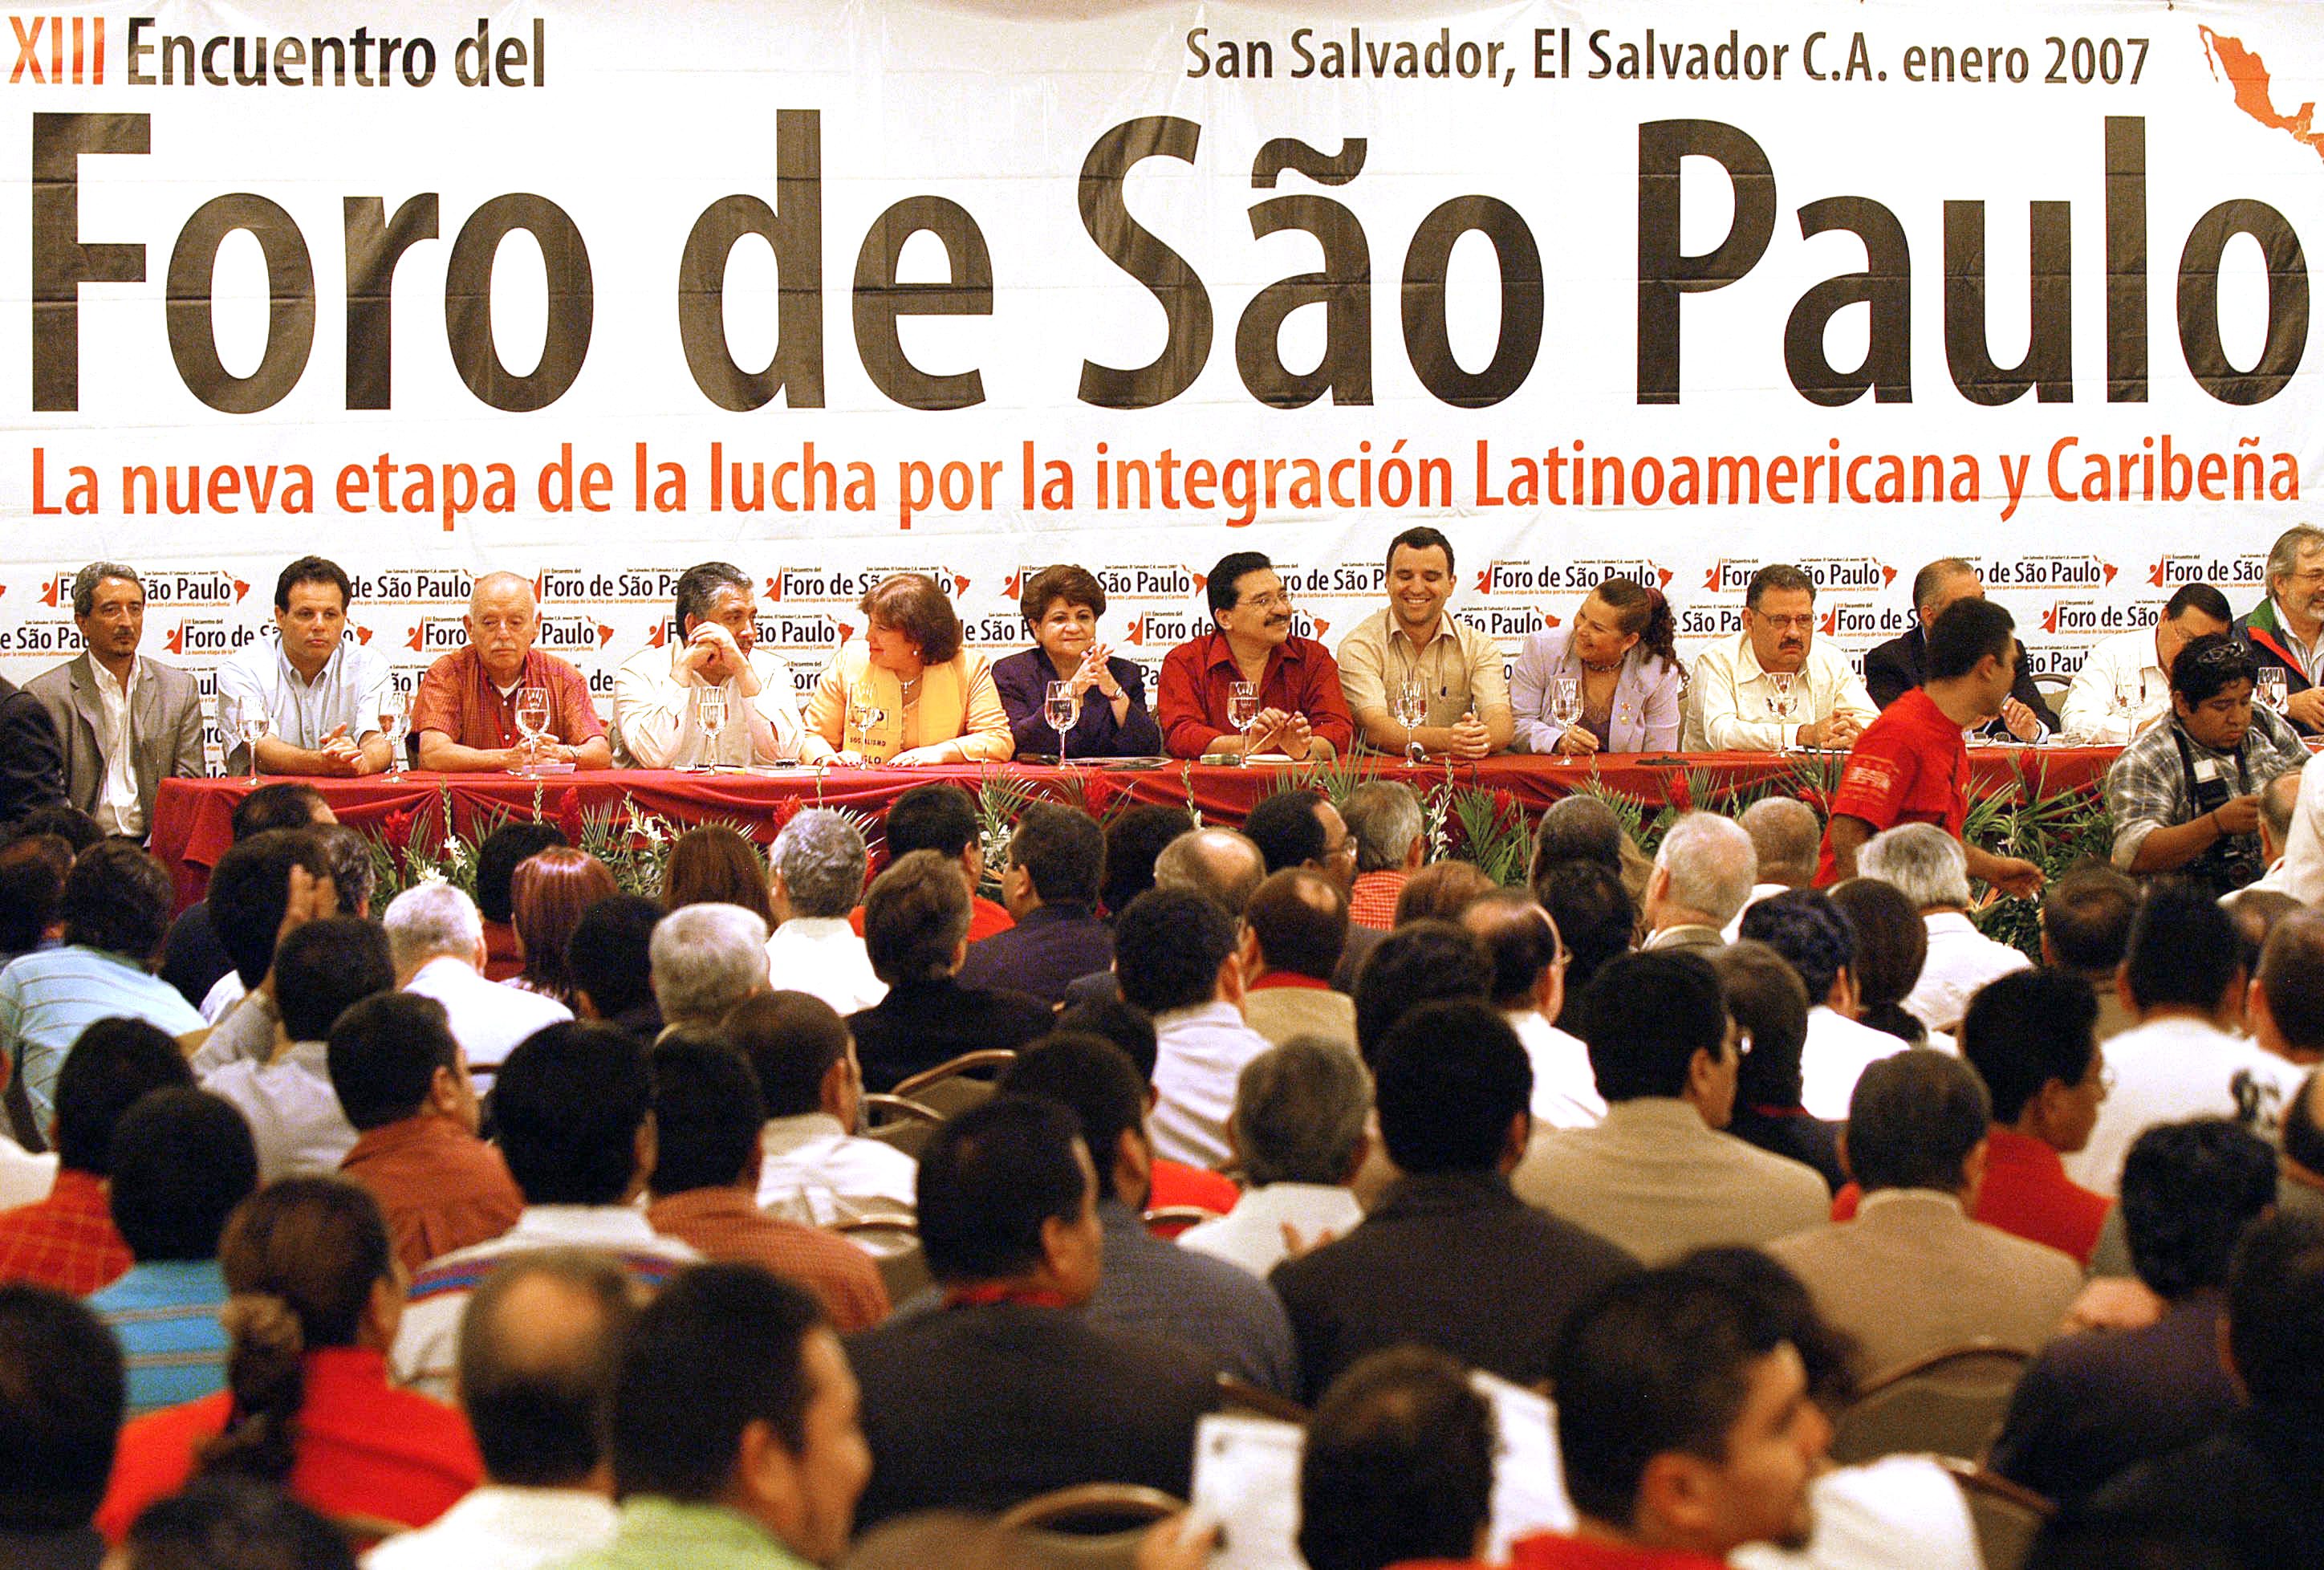 El grupo de partidos latinoamericanos prevé realizar una jornada de solidaridad mundial  que se realizará el próximo 19 de abril.